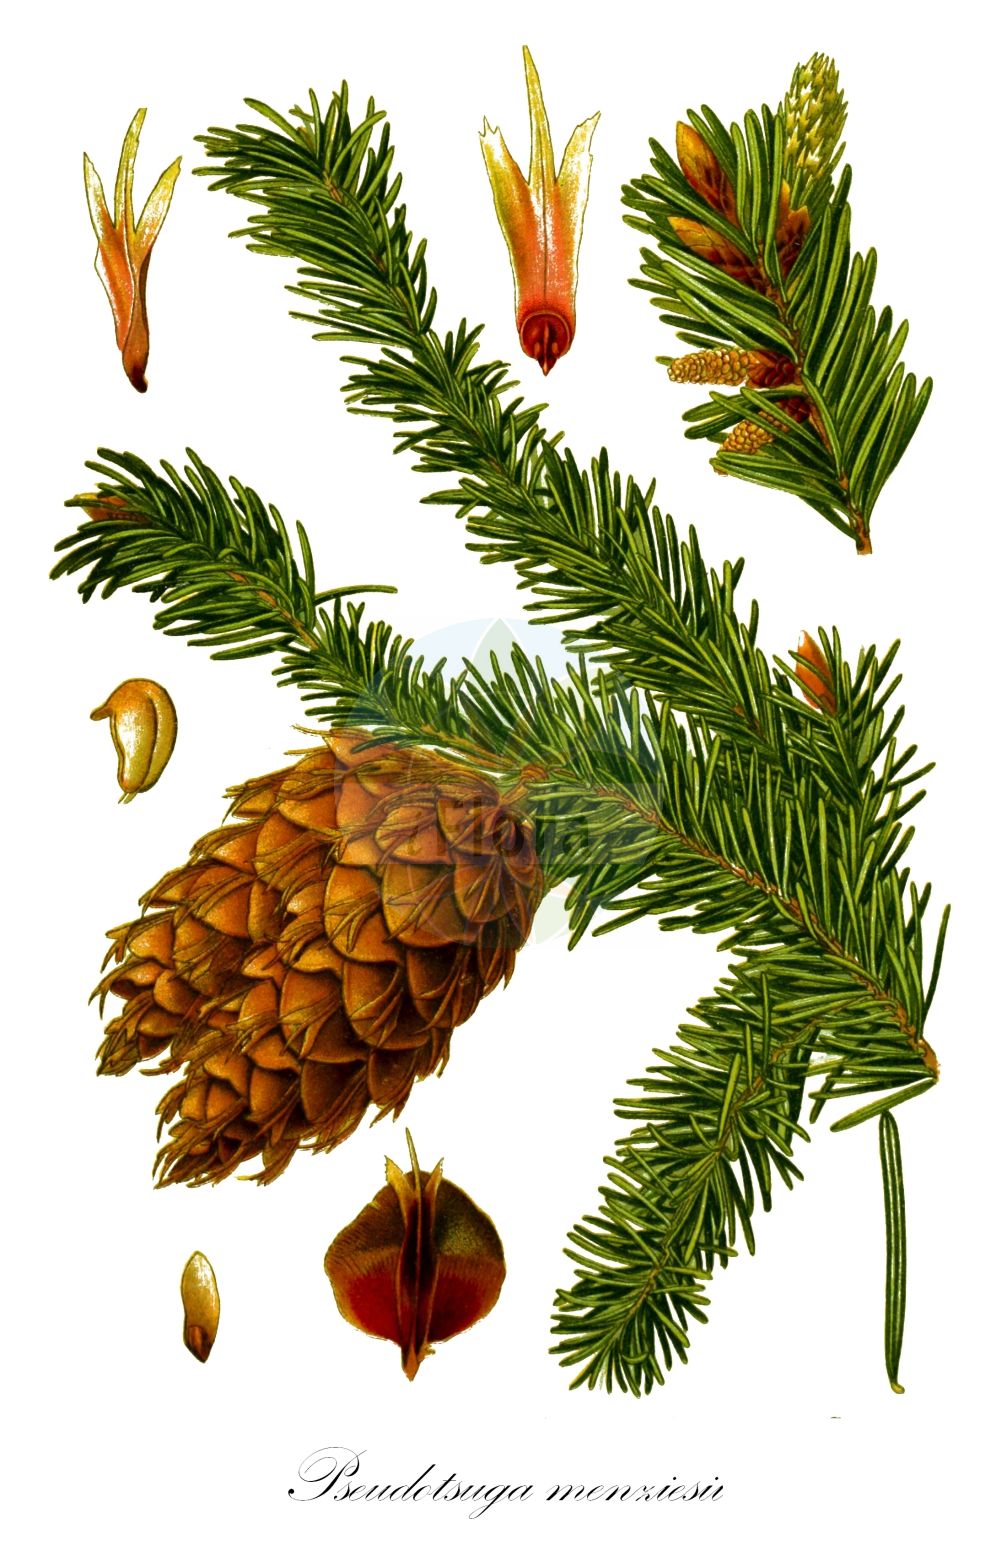 Historische Abbildung von Pseudotsuga menziesii (Gewöhnliche Douglasie - Douglas Fir). ---- Historical Drawing of Pseudotsuga menziesii (Gewöhnliche Douglasie - Douglas Fir).(Pseudotsuga menziesii,Gewöhnliche Douglasie,Douglas Fir,Abies menziesii,Pinus douglasii,Pinus taxifolia,Pseudotsuga douglasii,Pseudotsuga menziesii,Pseudotsuga taxifolia,Gewoehnliche Douglasie,Douglasie,Gebirgs-Douglasie,Douglas Fir,British Columbian Pine,Columbian Pine,Coast Douglas-fir,Douglas Spruce,Rocky Mountain Douglas-fir,Green Douglas Fir,Oregon Pine,Red Fir,Pseudotsuga,Douglasie,Douglas-fir,Pinaceae,Kieferngewächse,Pine family,Mouillefert (1892-1898))